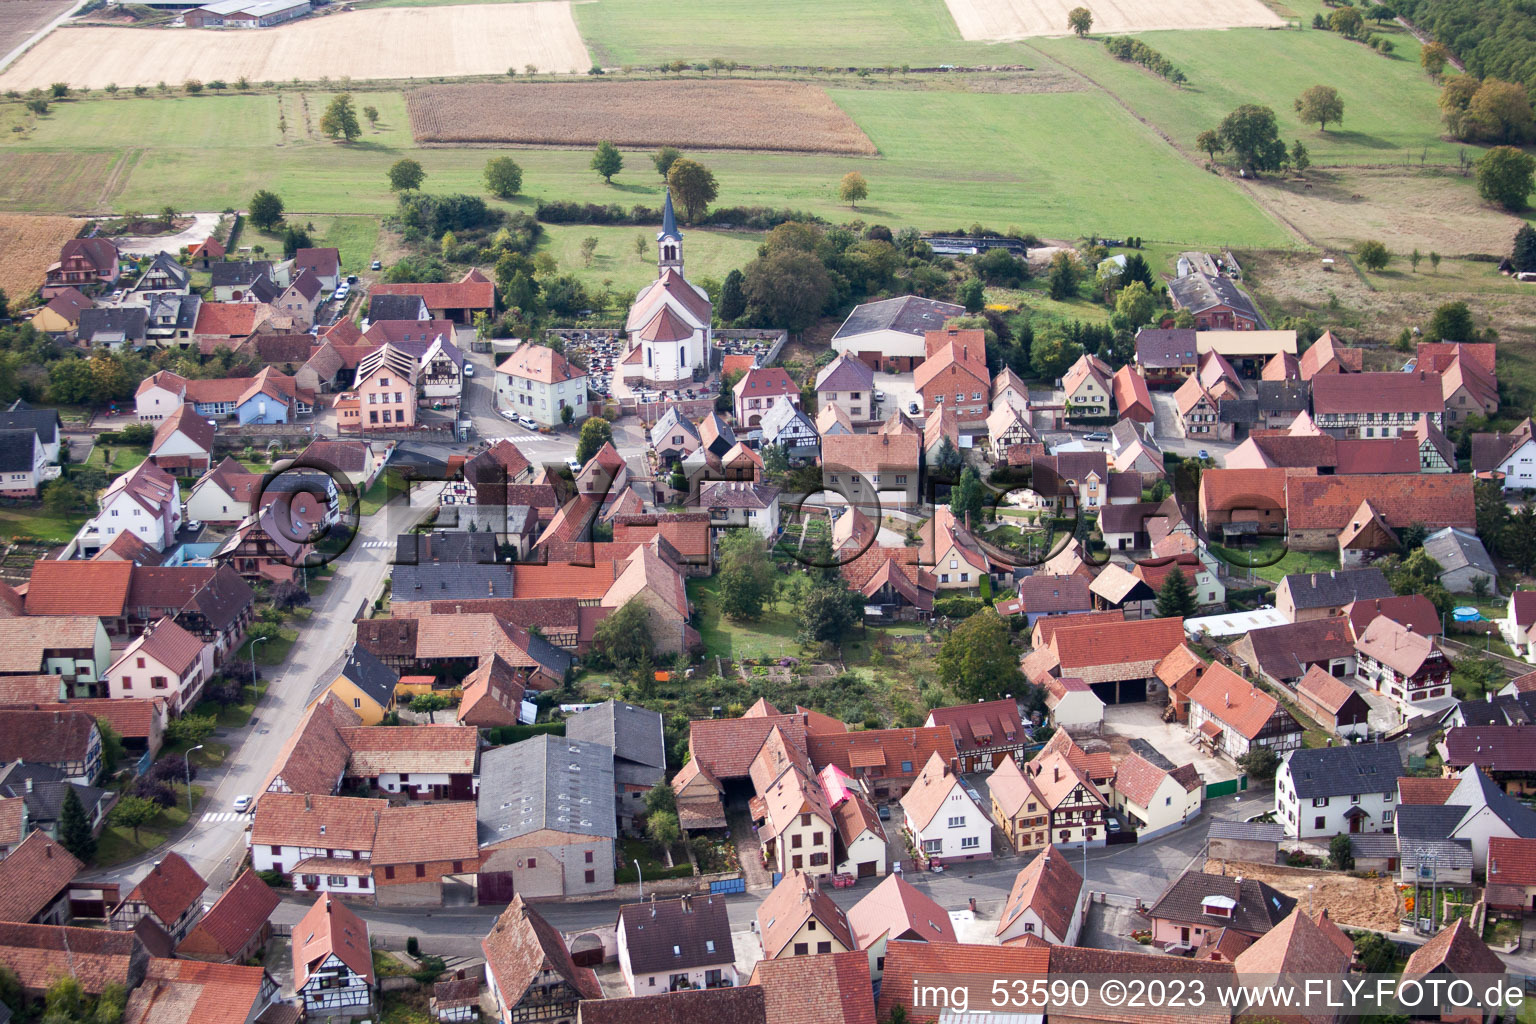 Lupstein dans le département Bas Rhin, France vue d'en haut